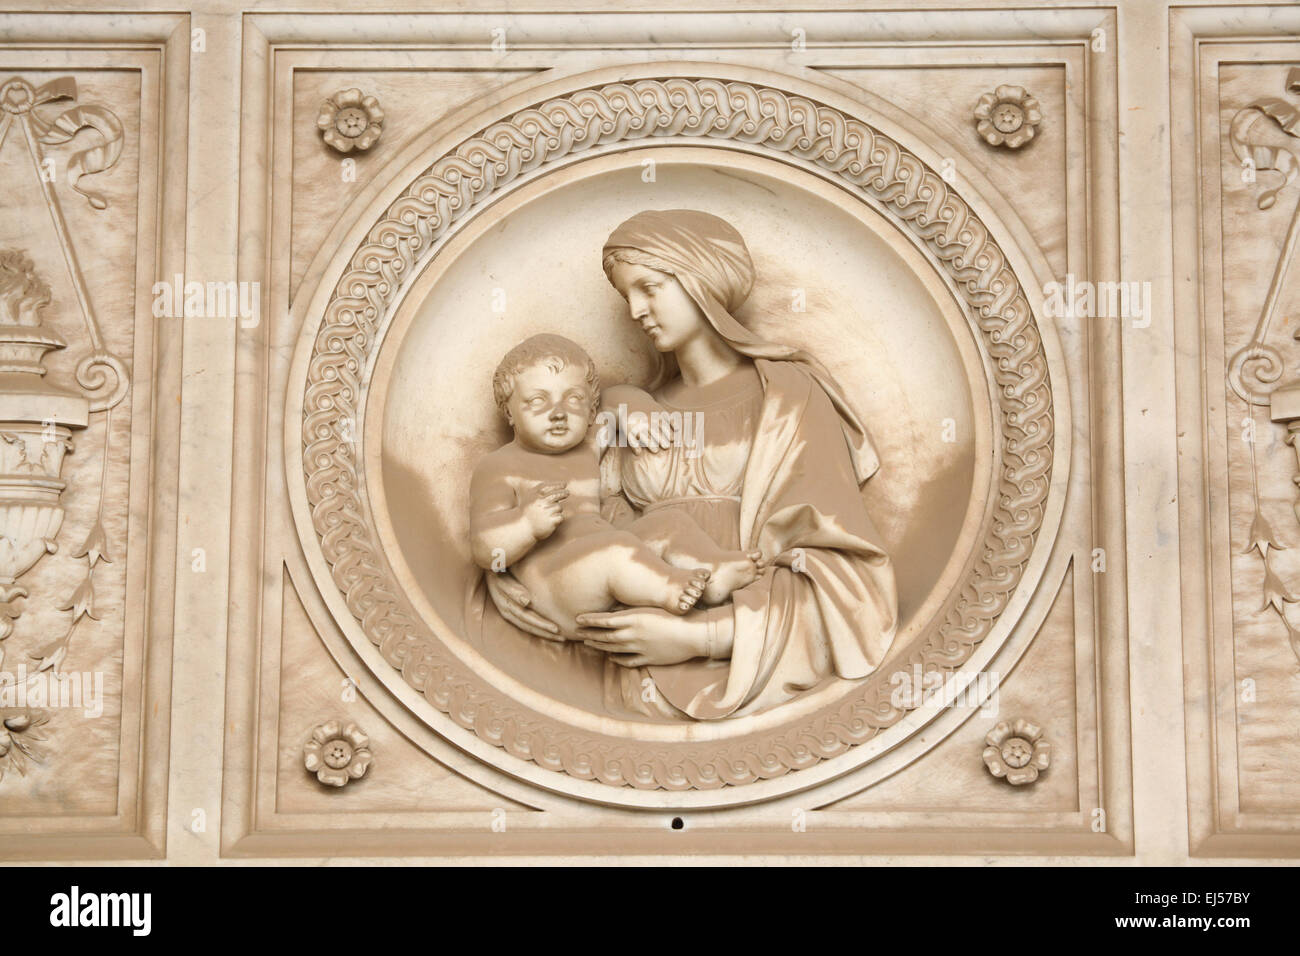 La Madonna e il bambino. Dettaglio della lapide di marmo presso il Campo Verano cimitero in Roma, Italia. Foto Stock